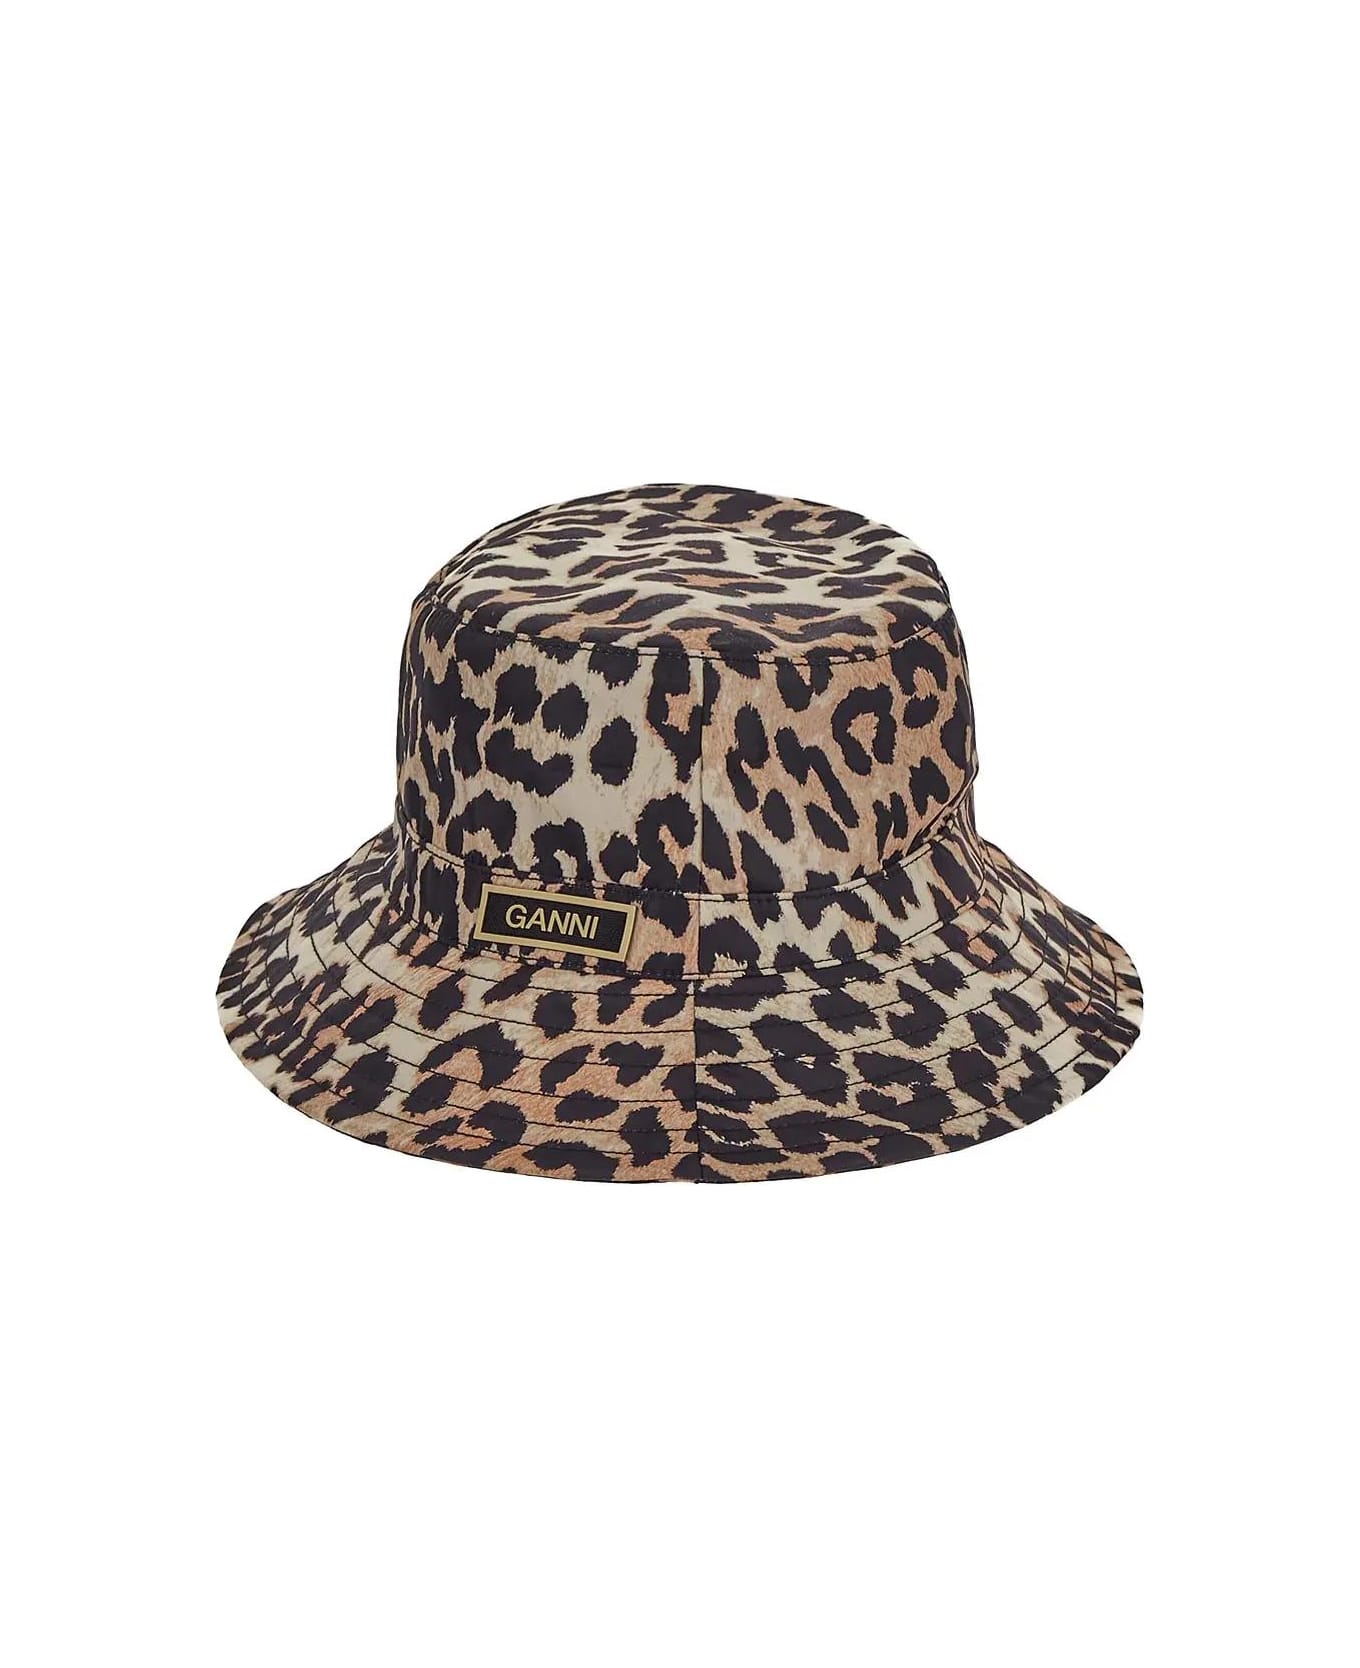 Ganni Leopard Print Bucket Hat - Brown